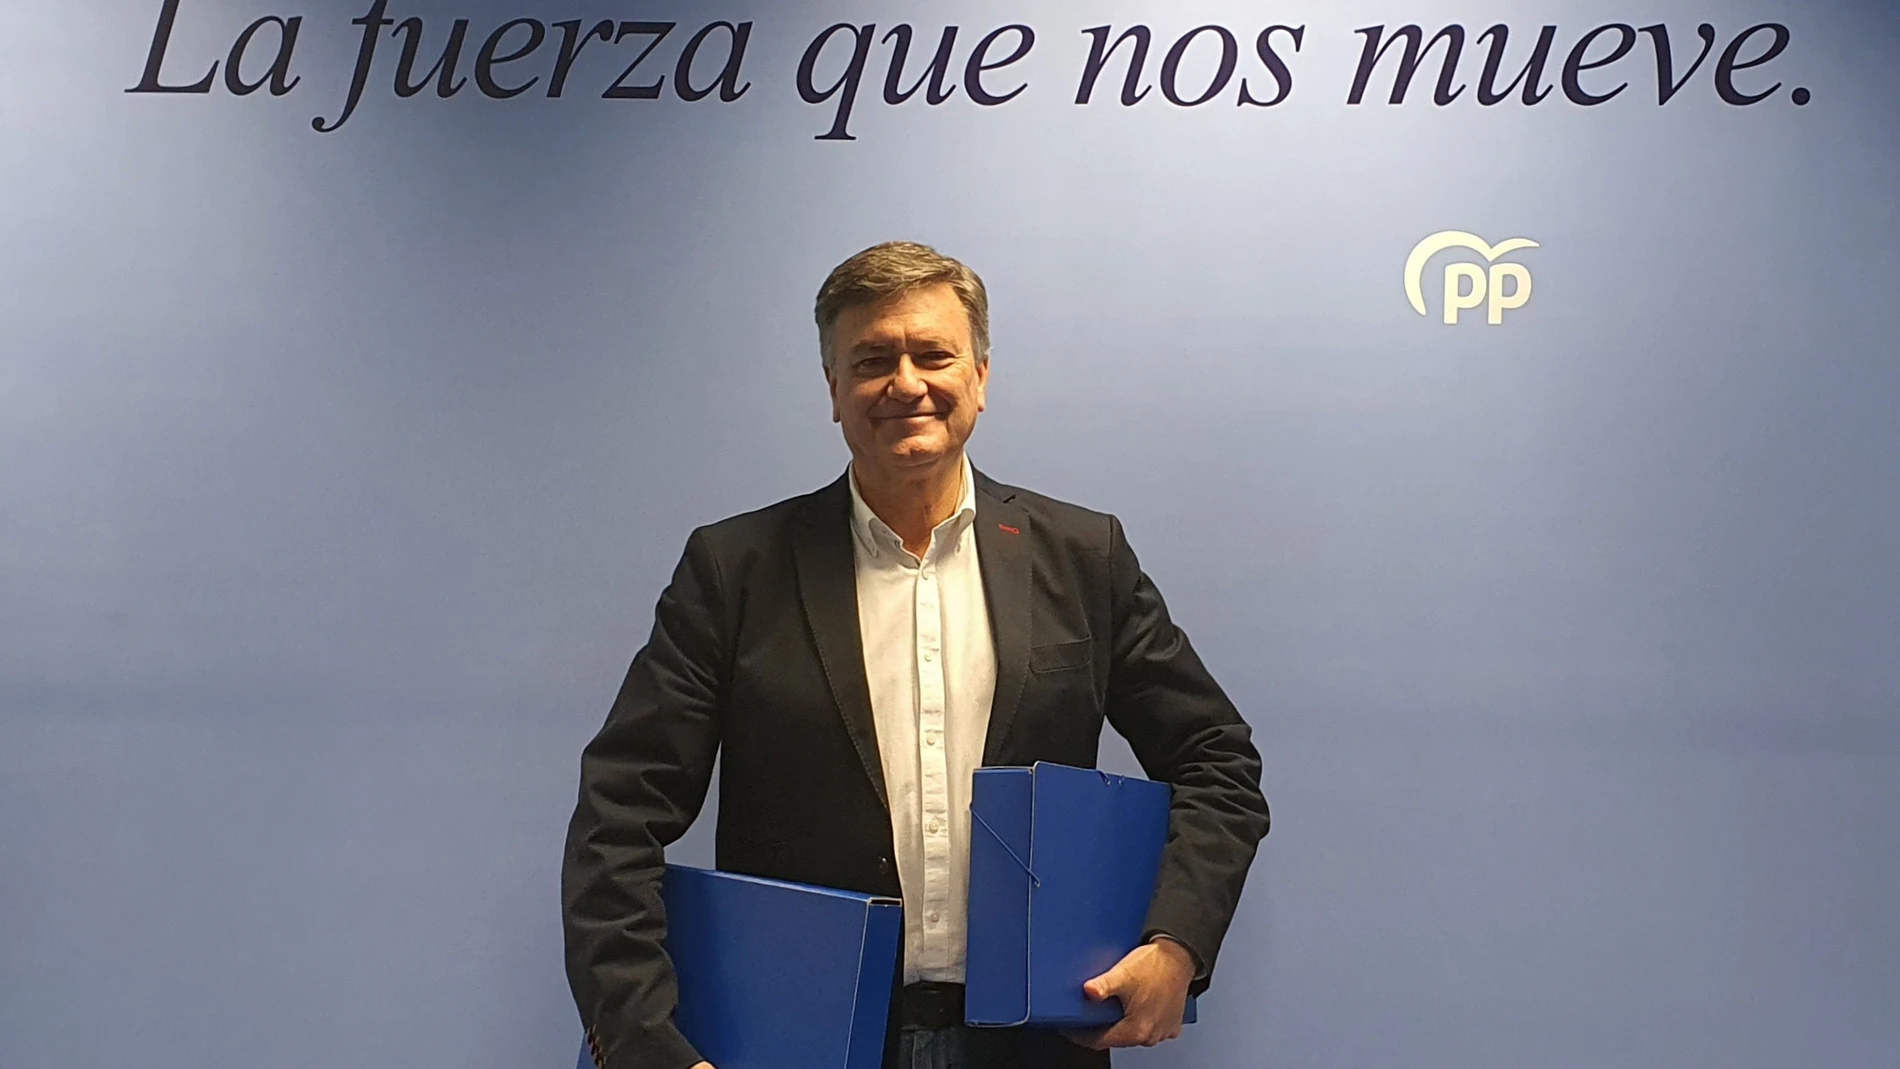 Francisco Vázquez posa con algunos de los avales recibidos para la candidatura de Alberto Núñez Feijóo. PPCYL 07/03/2022